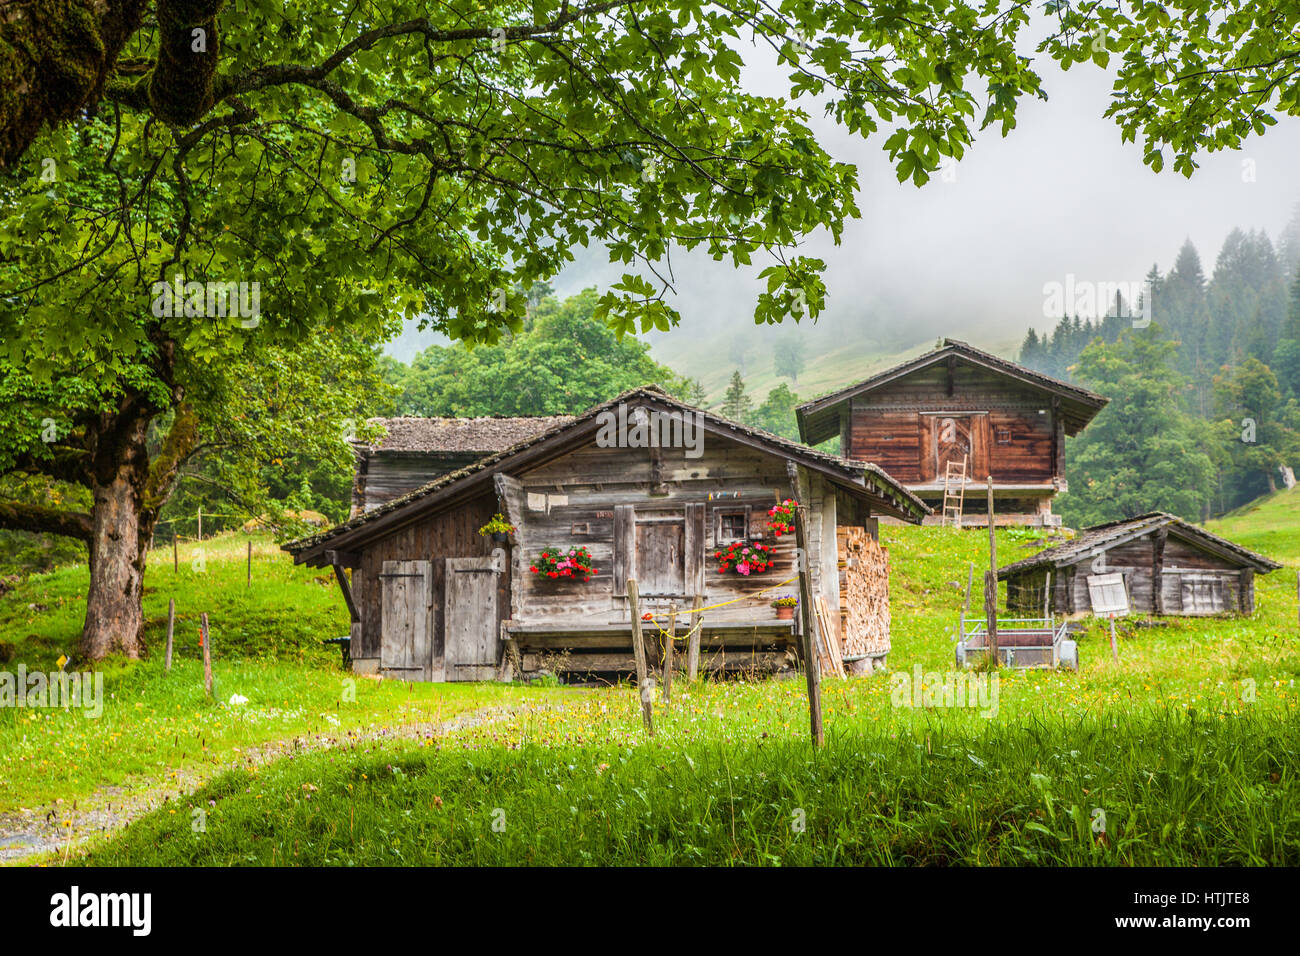 Malerische Aussicht auf traditionellen alten hölzernen Chalets in den Alpen mit frischen grünen Berg Wiesen, Bäume und mystische Nebel an einem bewölkten Tag im Sommer Stockfoto